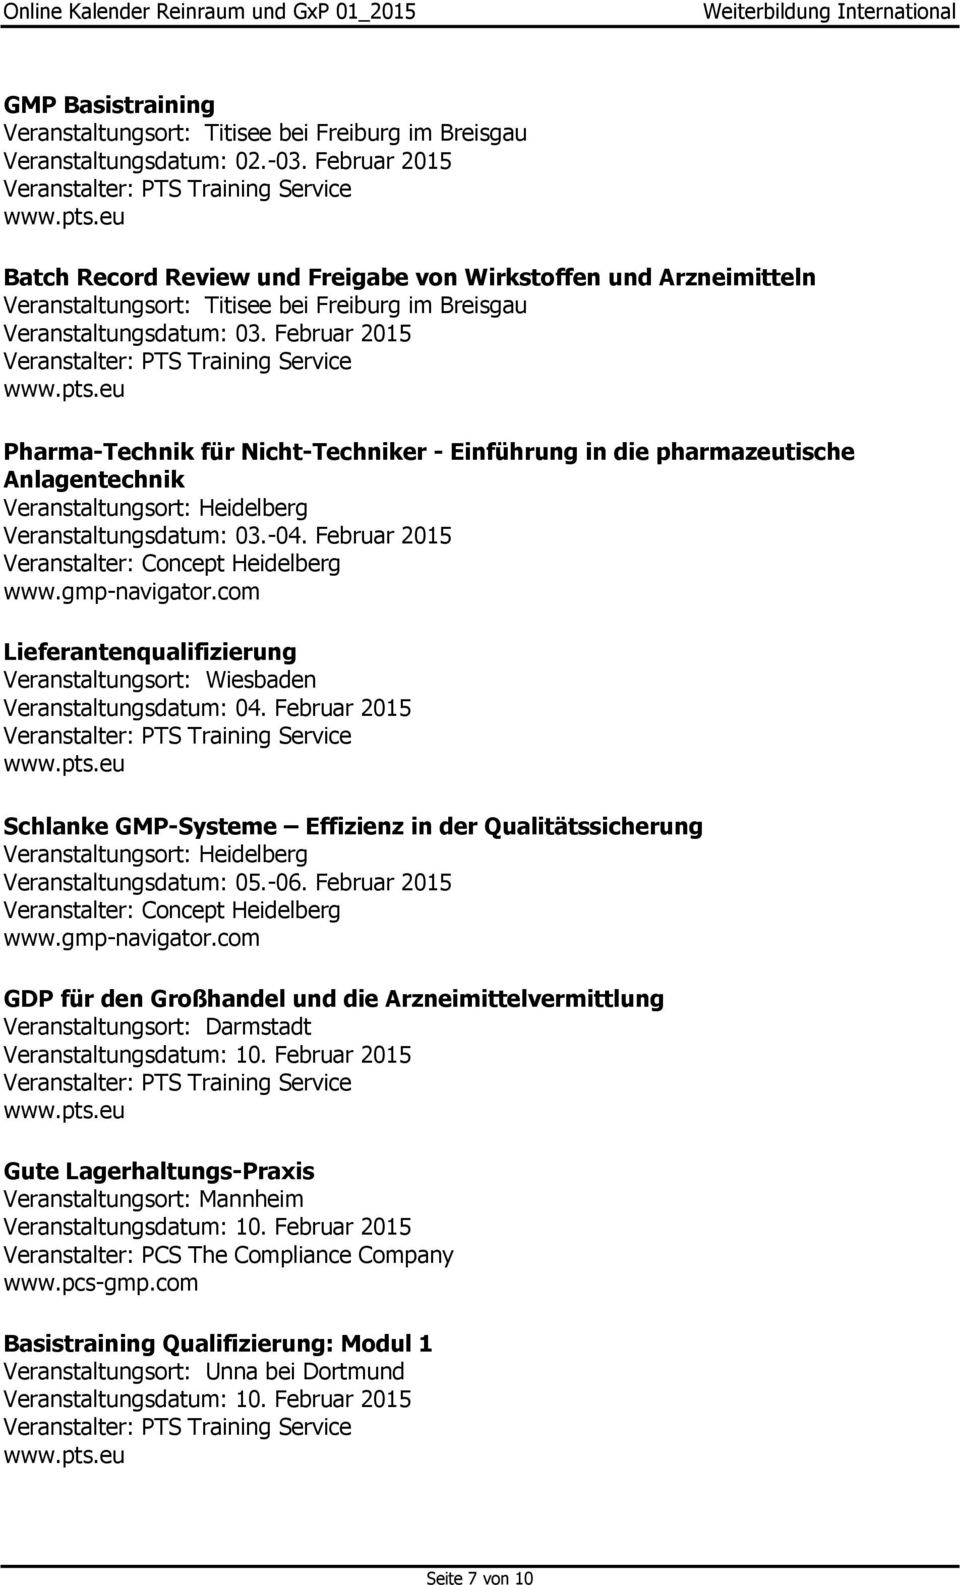 Februar 2015 Training Service Pharma-Technik für Nicht-Techniker - Einführung in die pharmazeutische Anlagentechnik Veranstaltungsort: Heidelberg Veranstaltungsdatum: 03.-04.